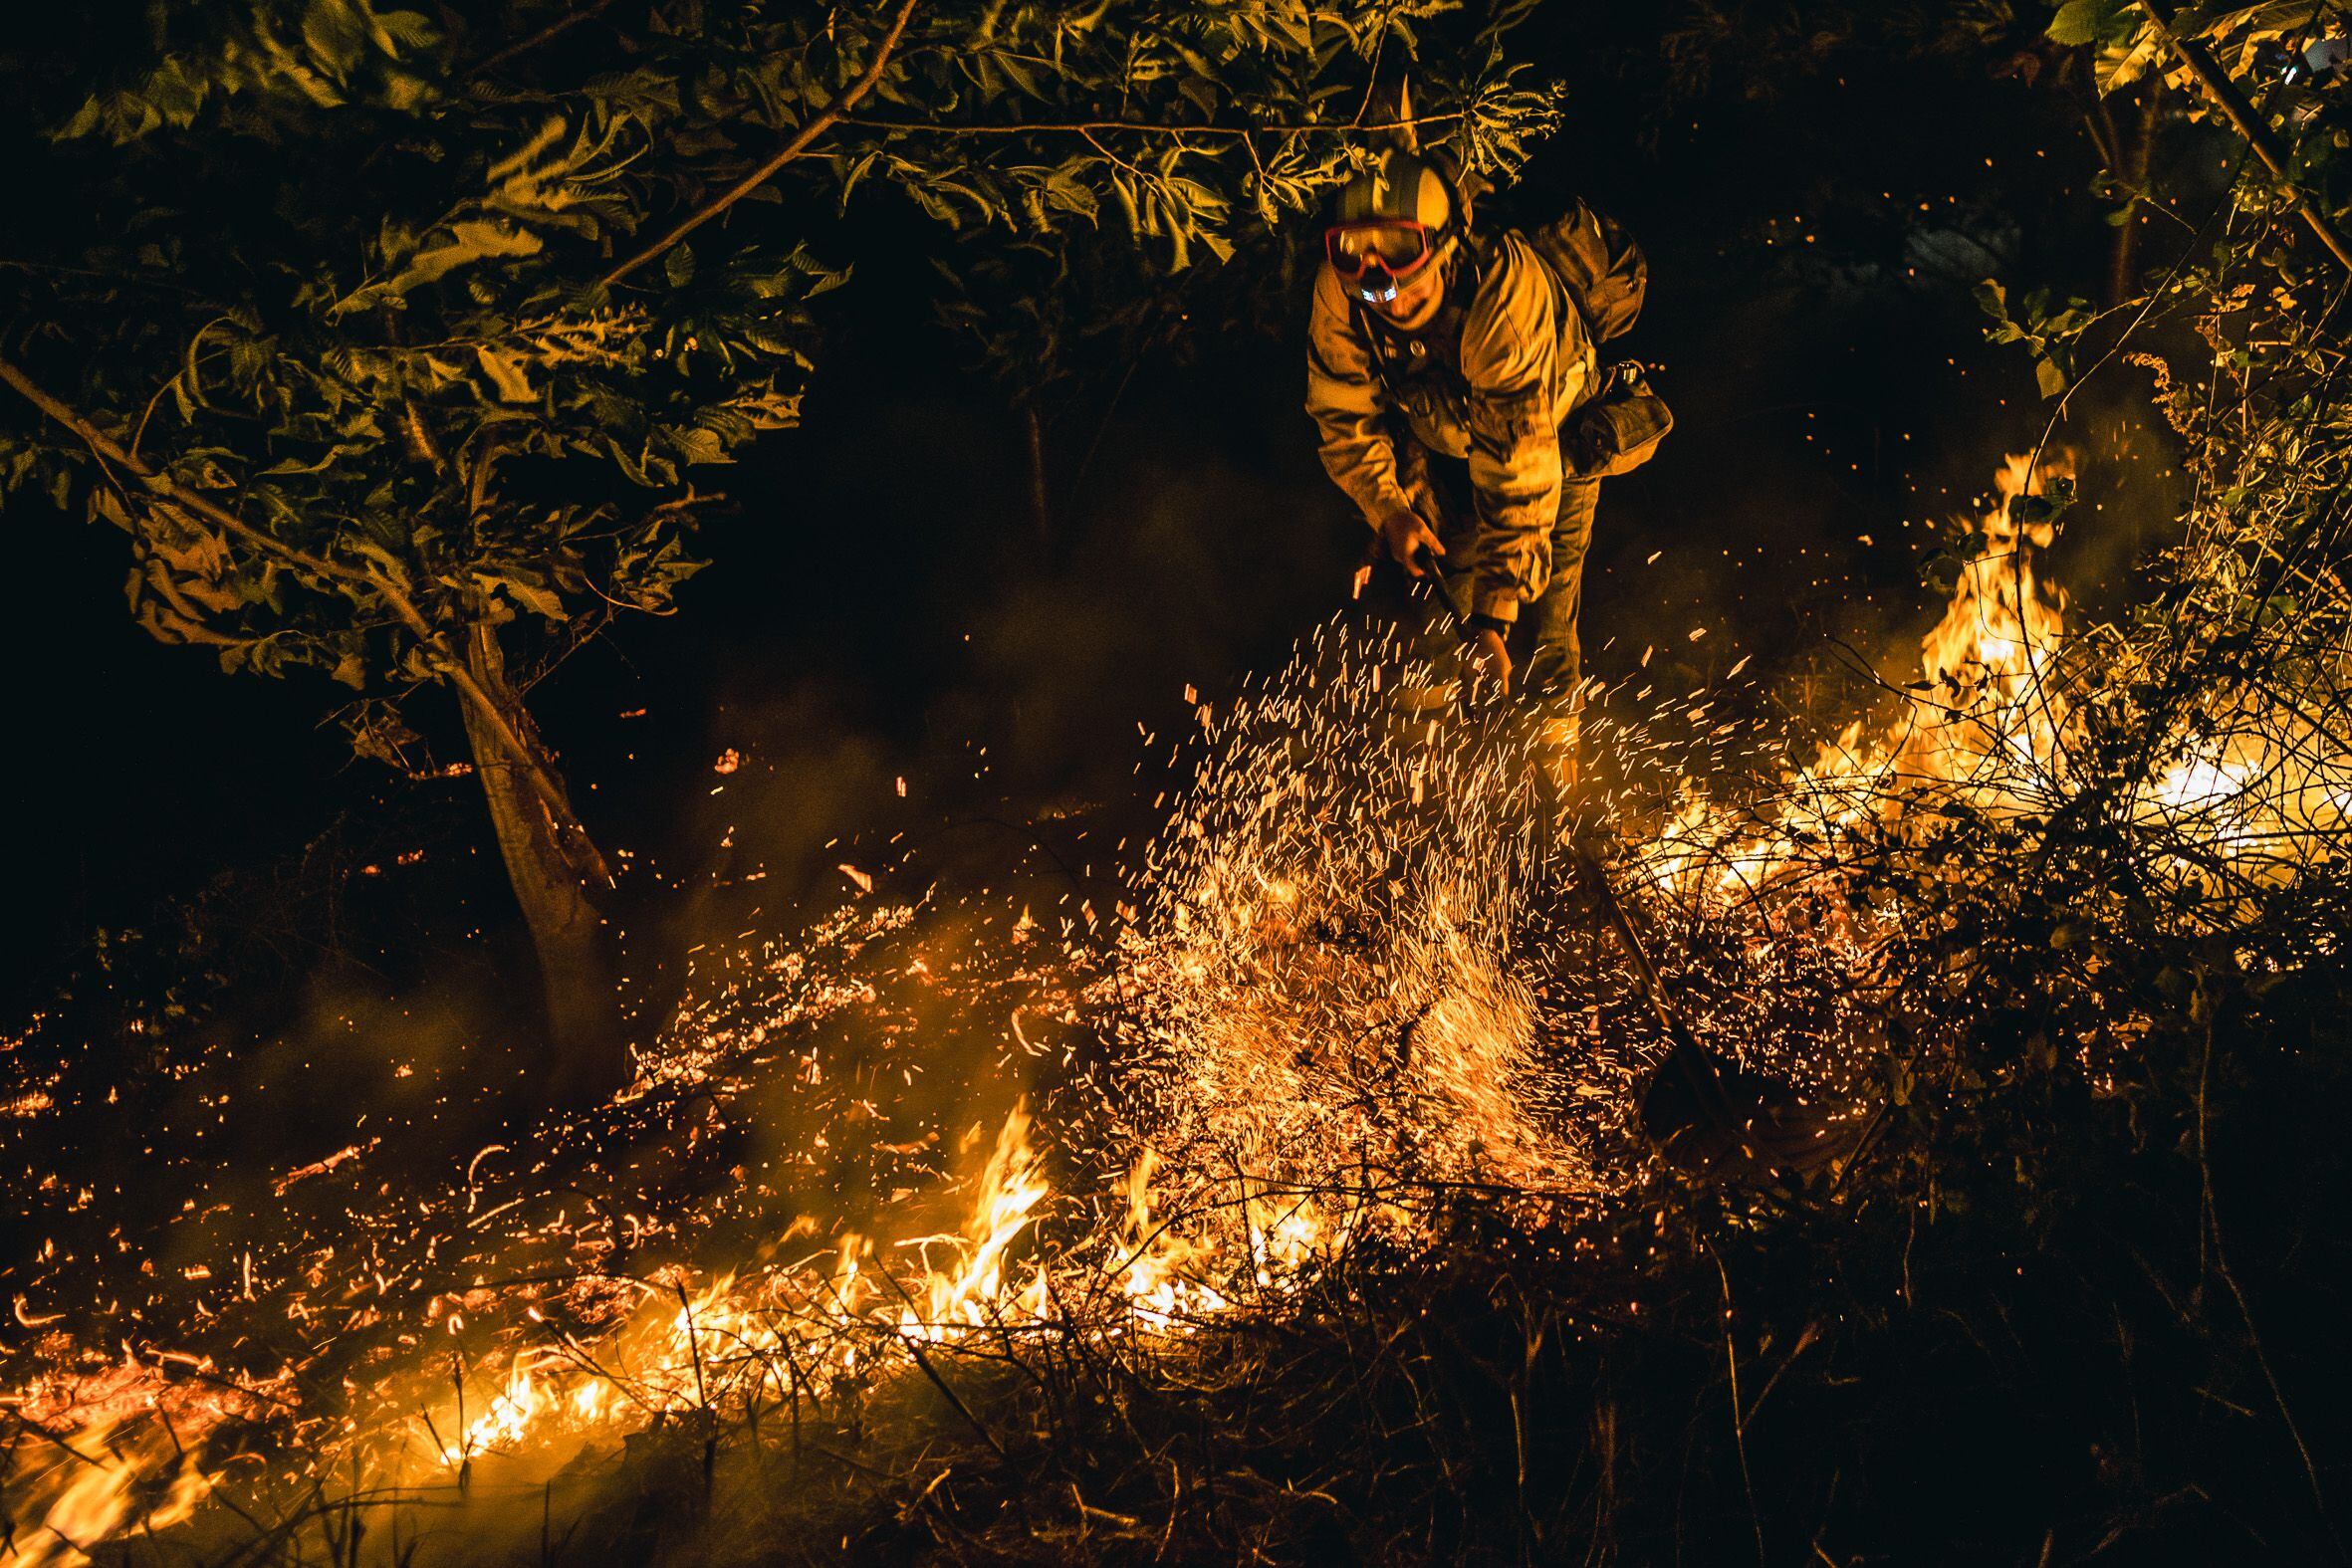 Un brigadista intenta sofocar el incendio en Boiro.